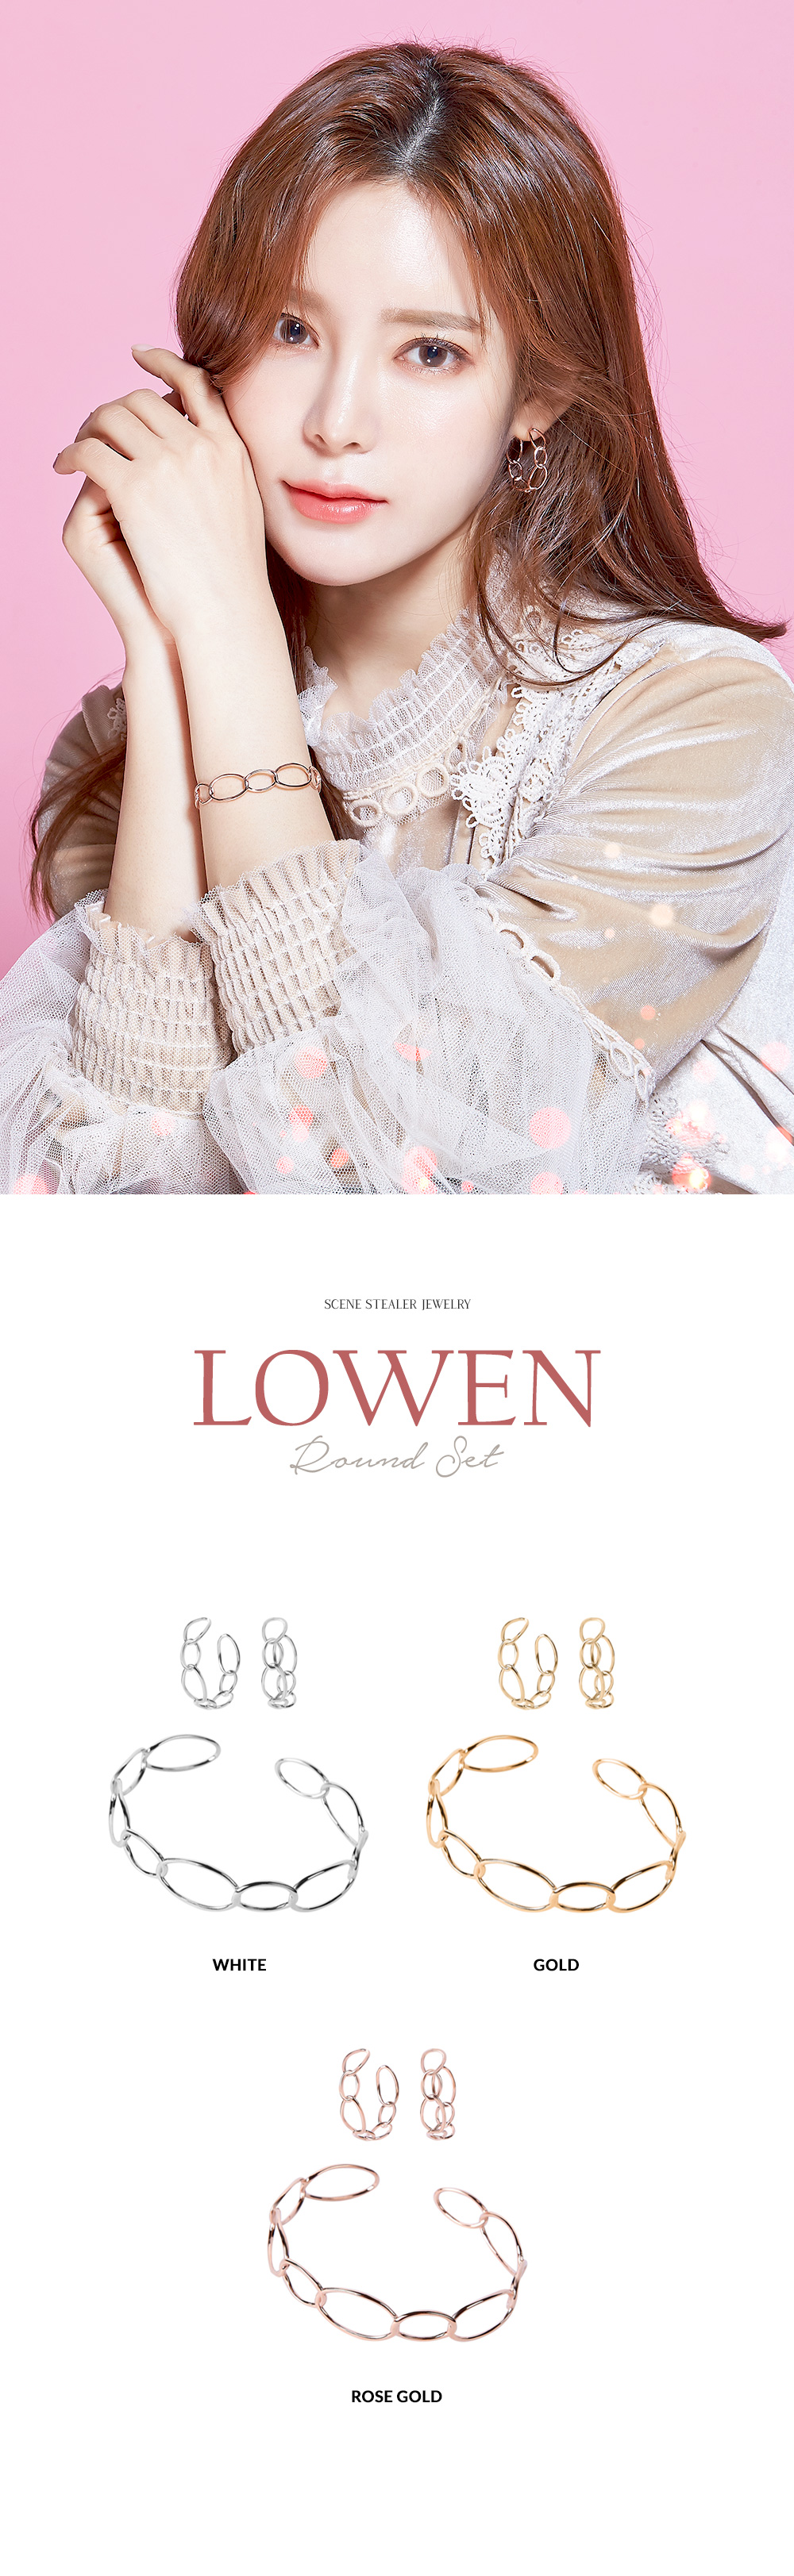 LOWEN_S_01.jpg